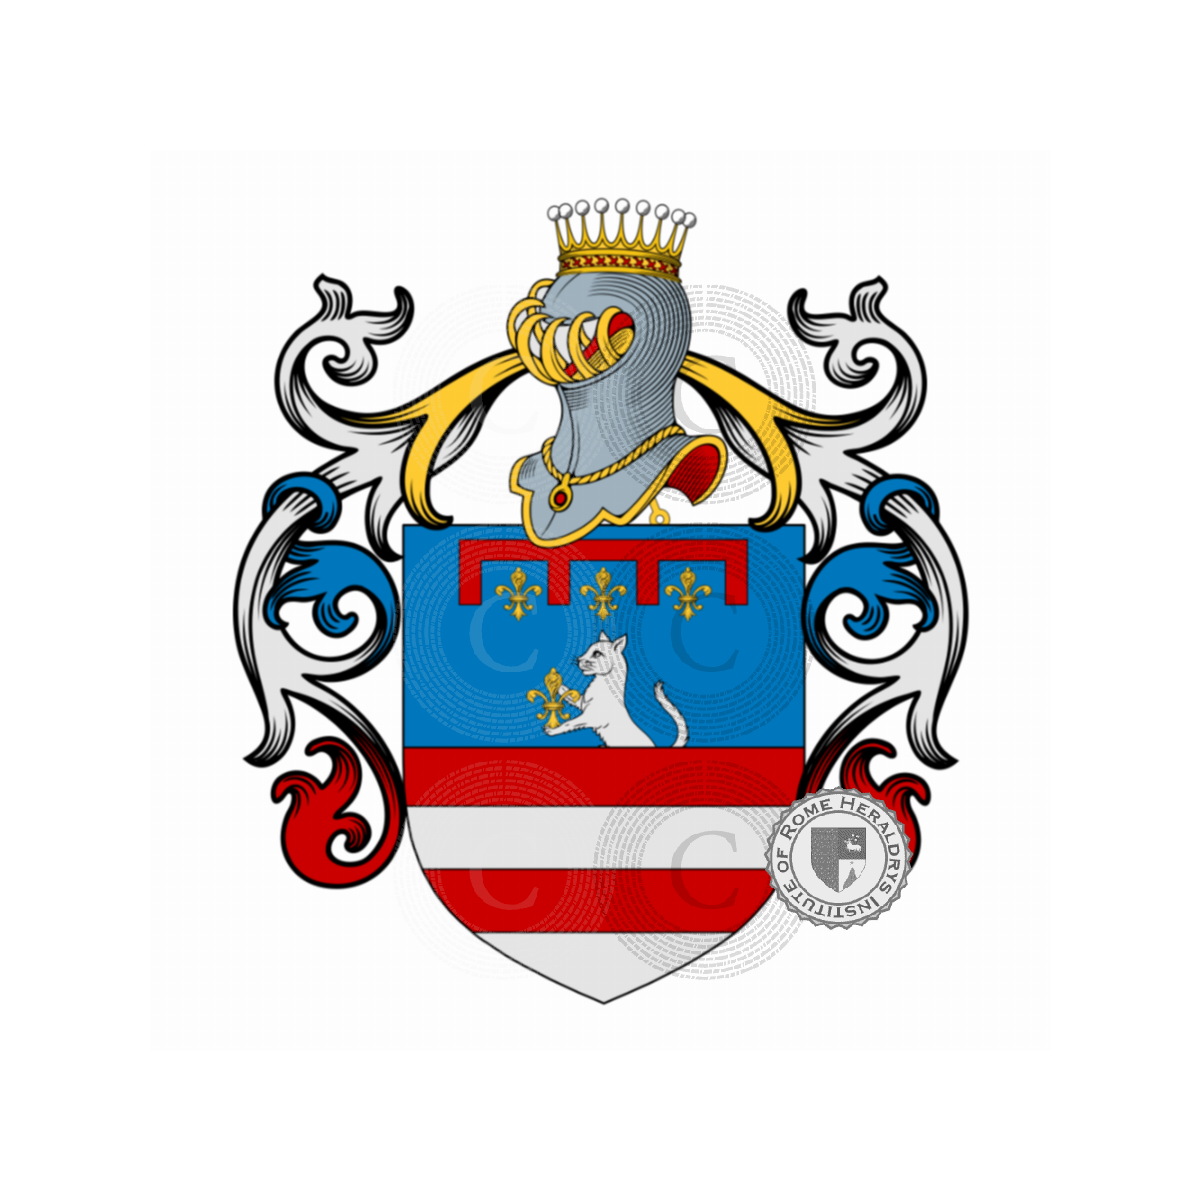 Wappen der FamilieMarchesi, Marchesi da Cortona,Marchesi de taddei